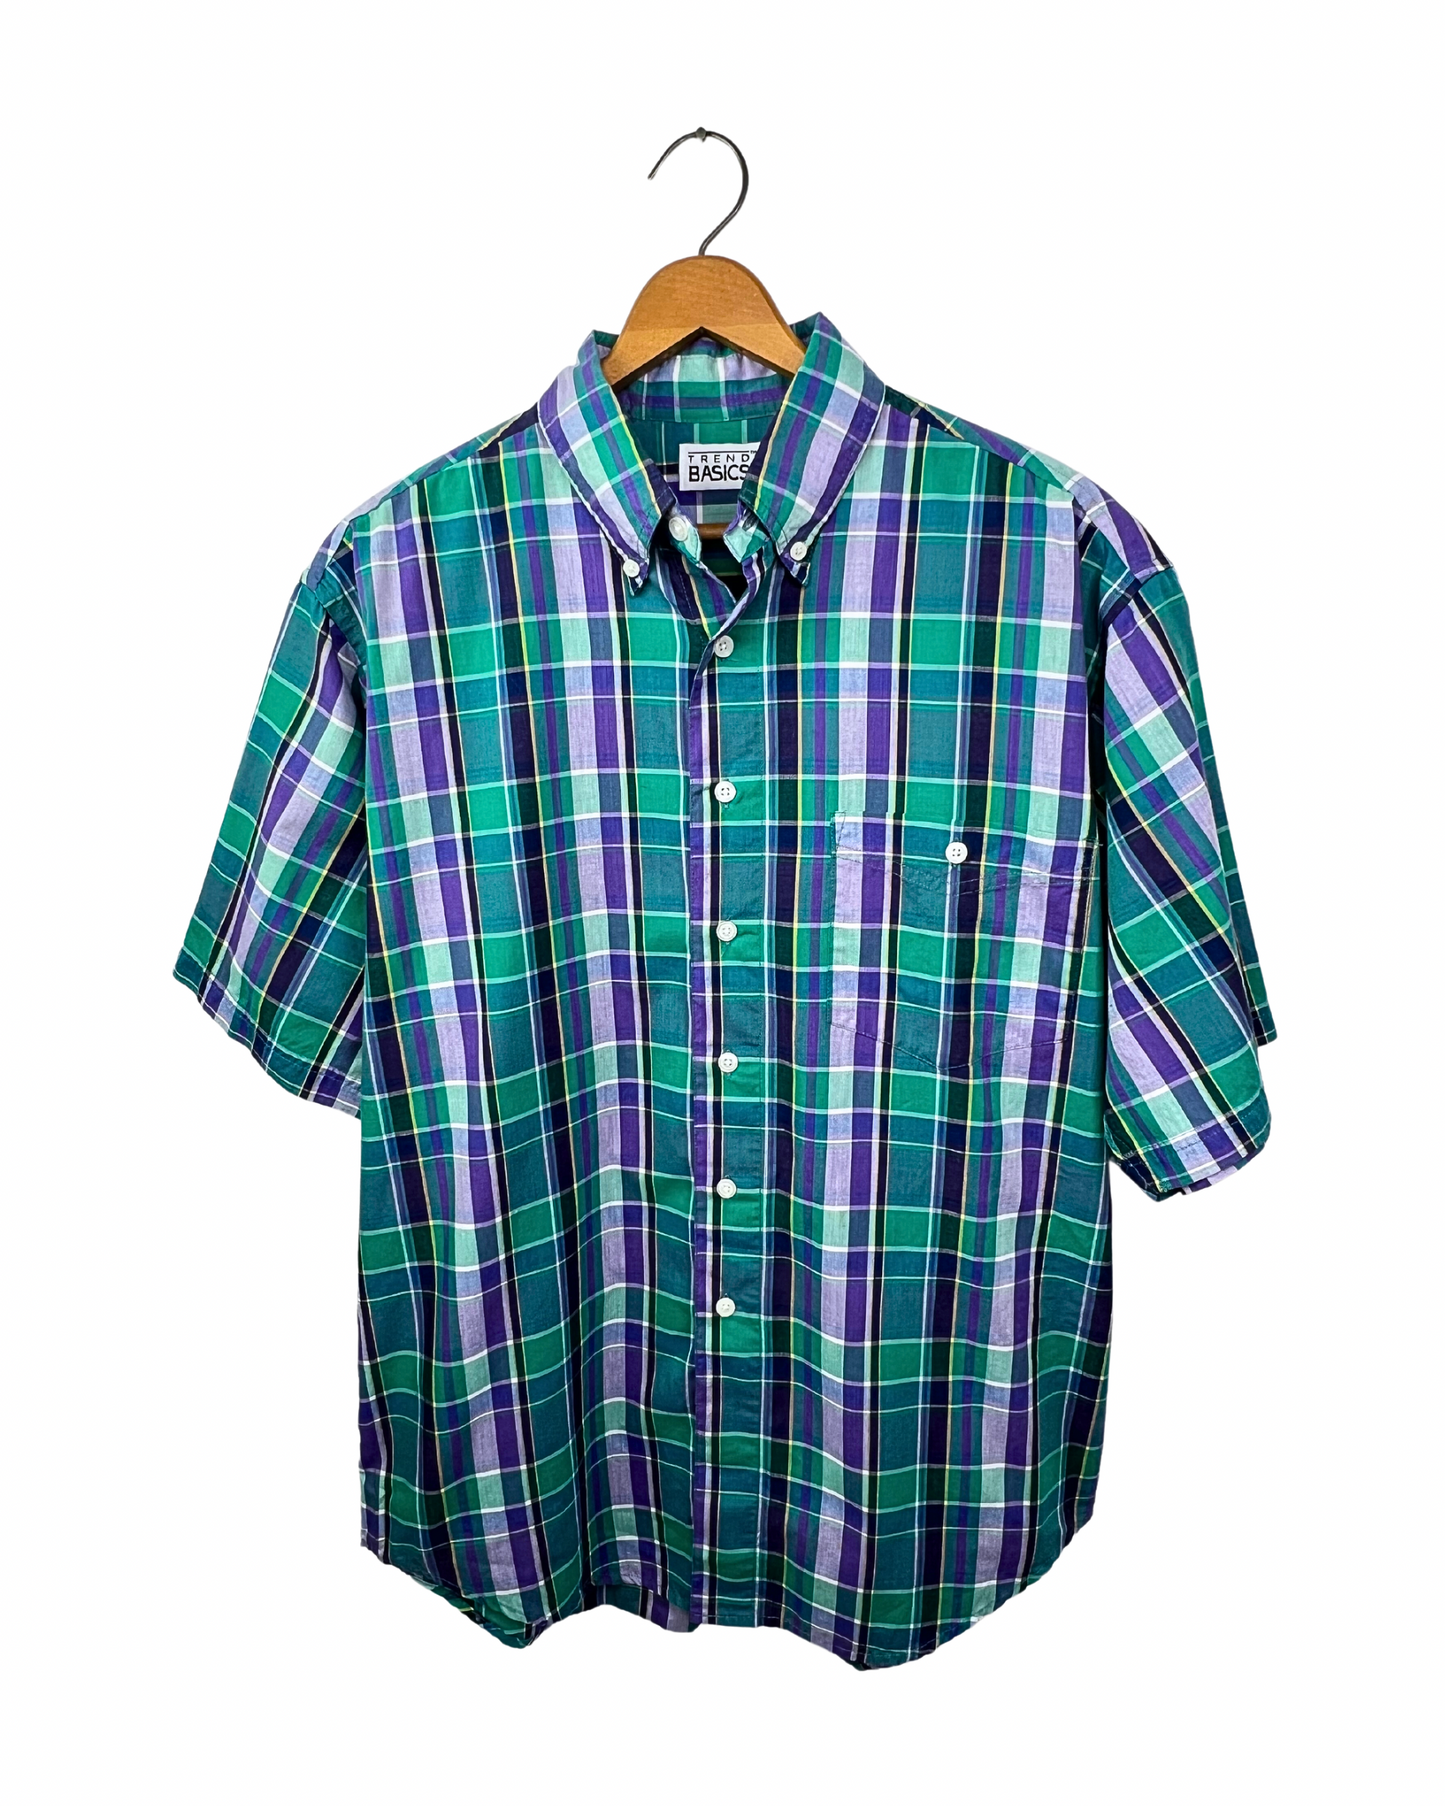 90’s Summer Plaid Short Sleeve Buttonup Shirt Size Medium